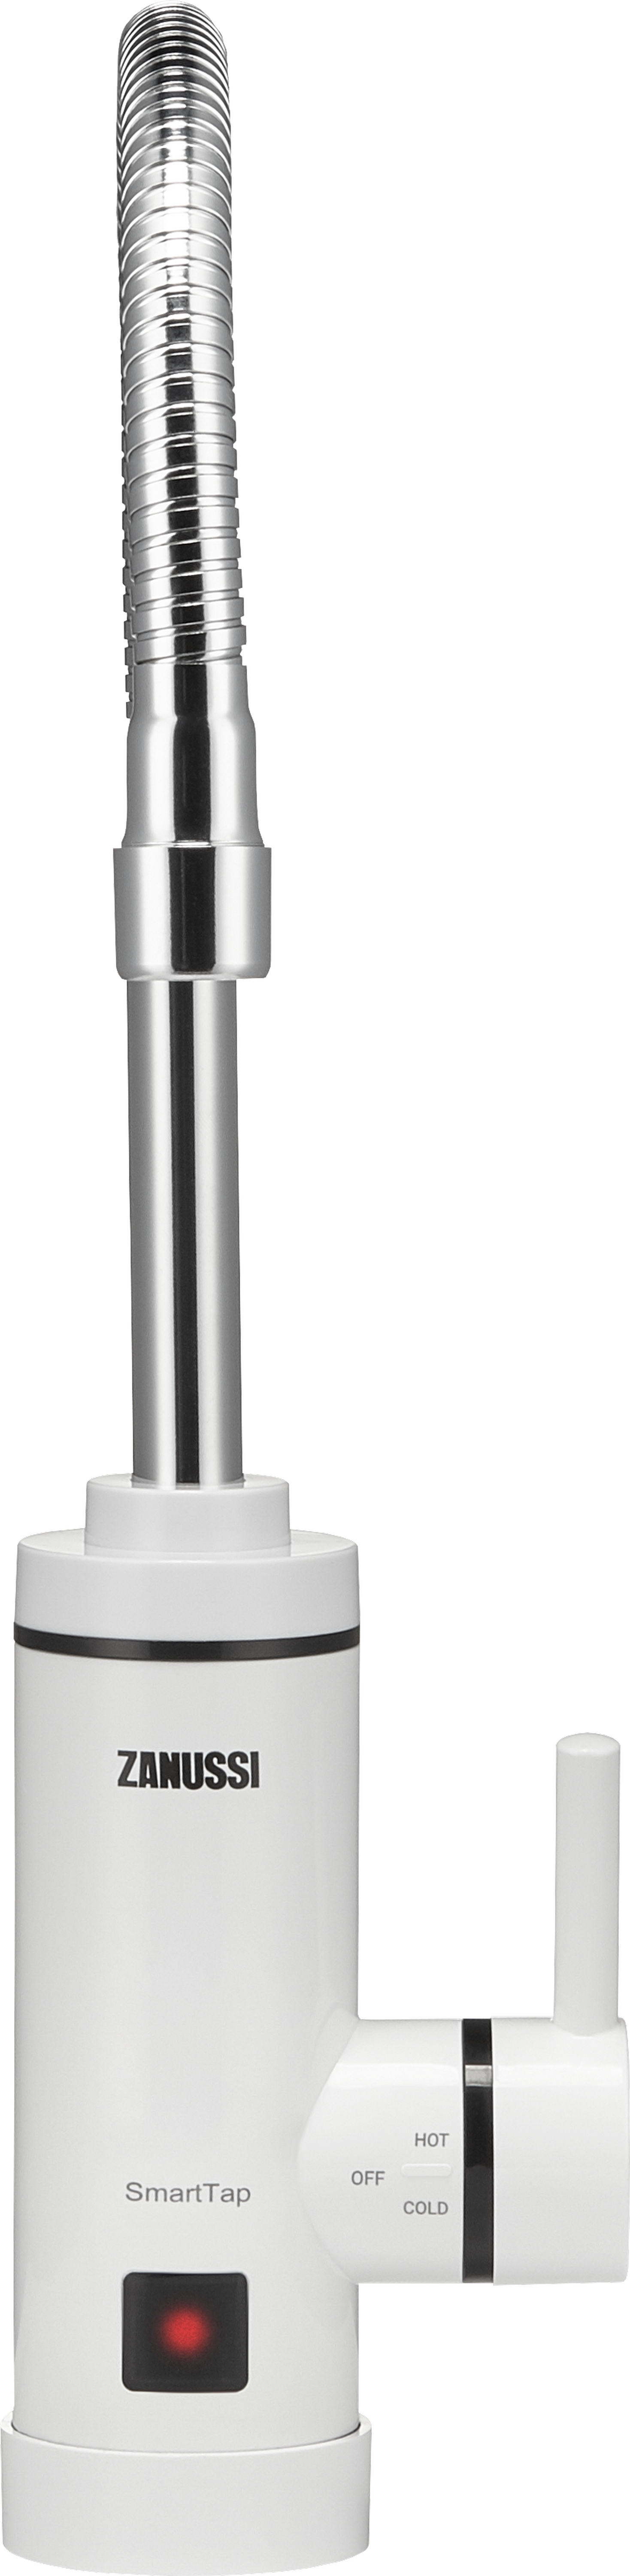 Проточный водонагреватель Zanussi SmartTap цена 1356.60 грн - фотография 2